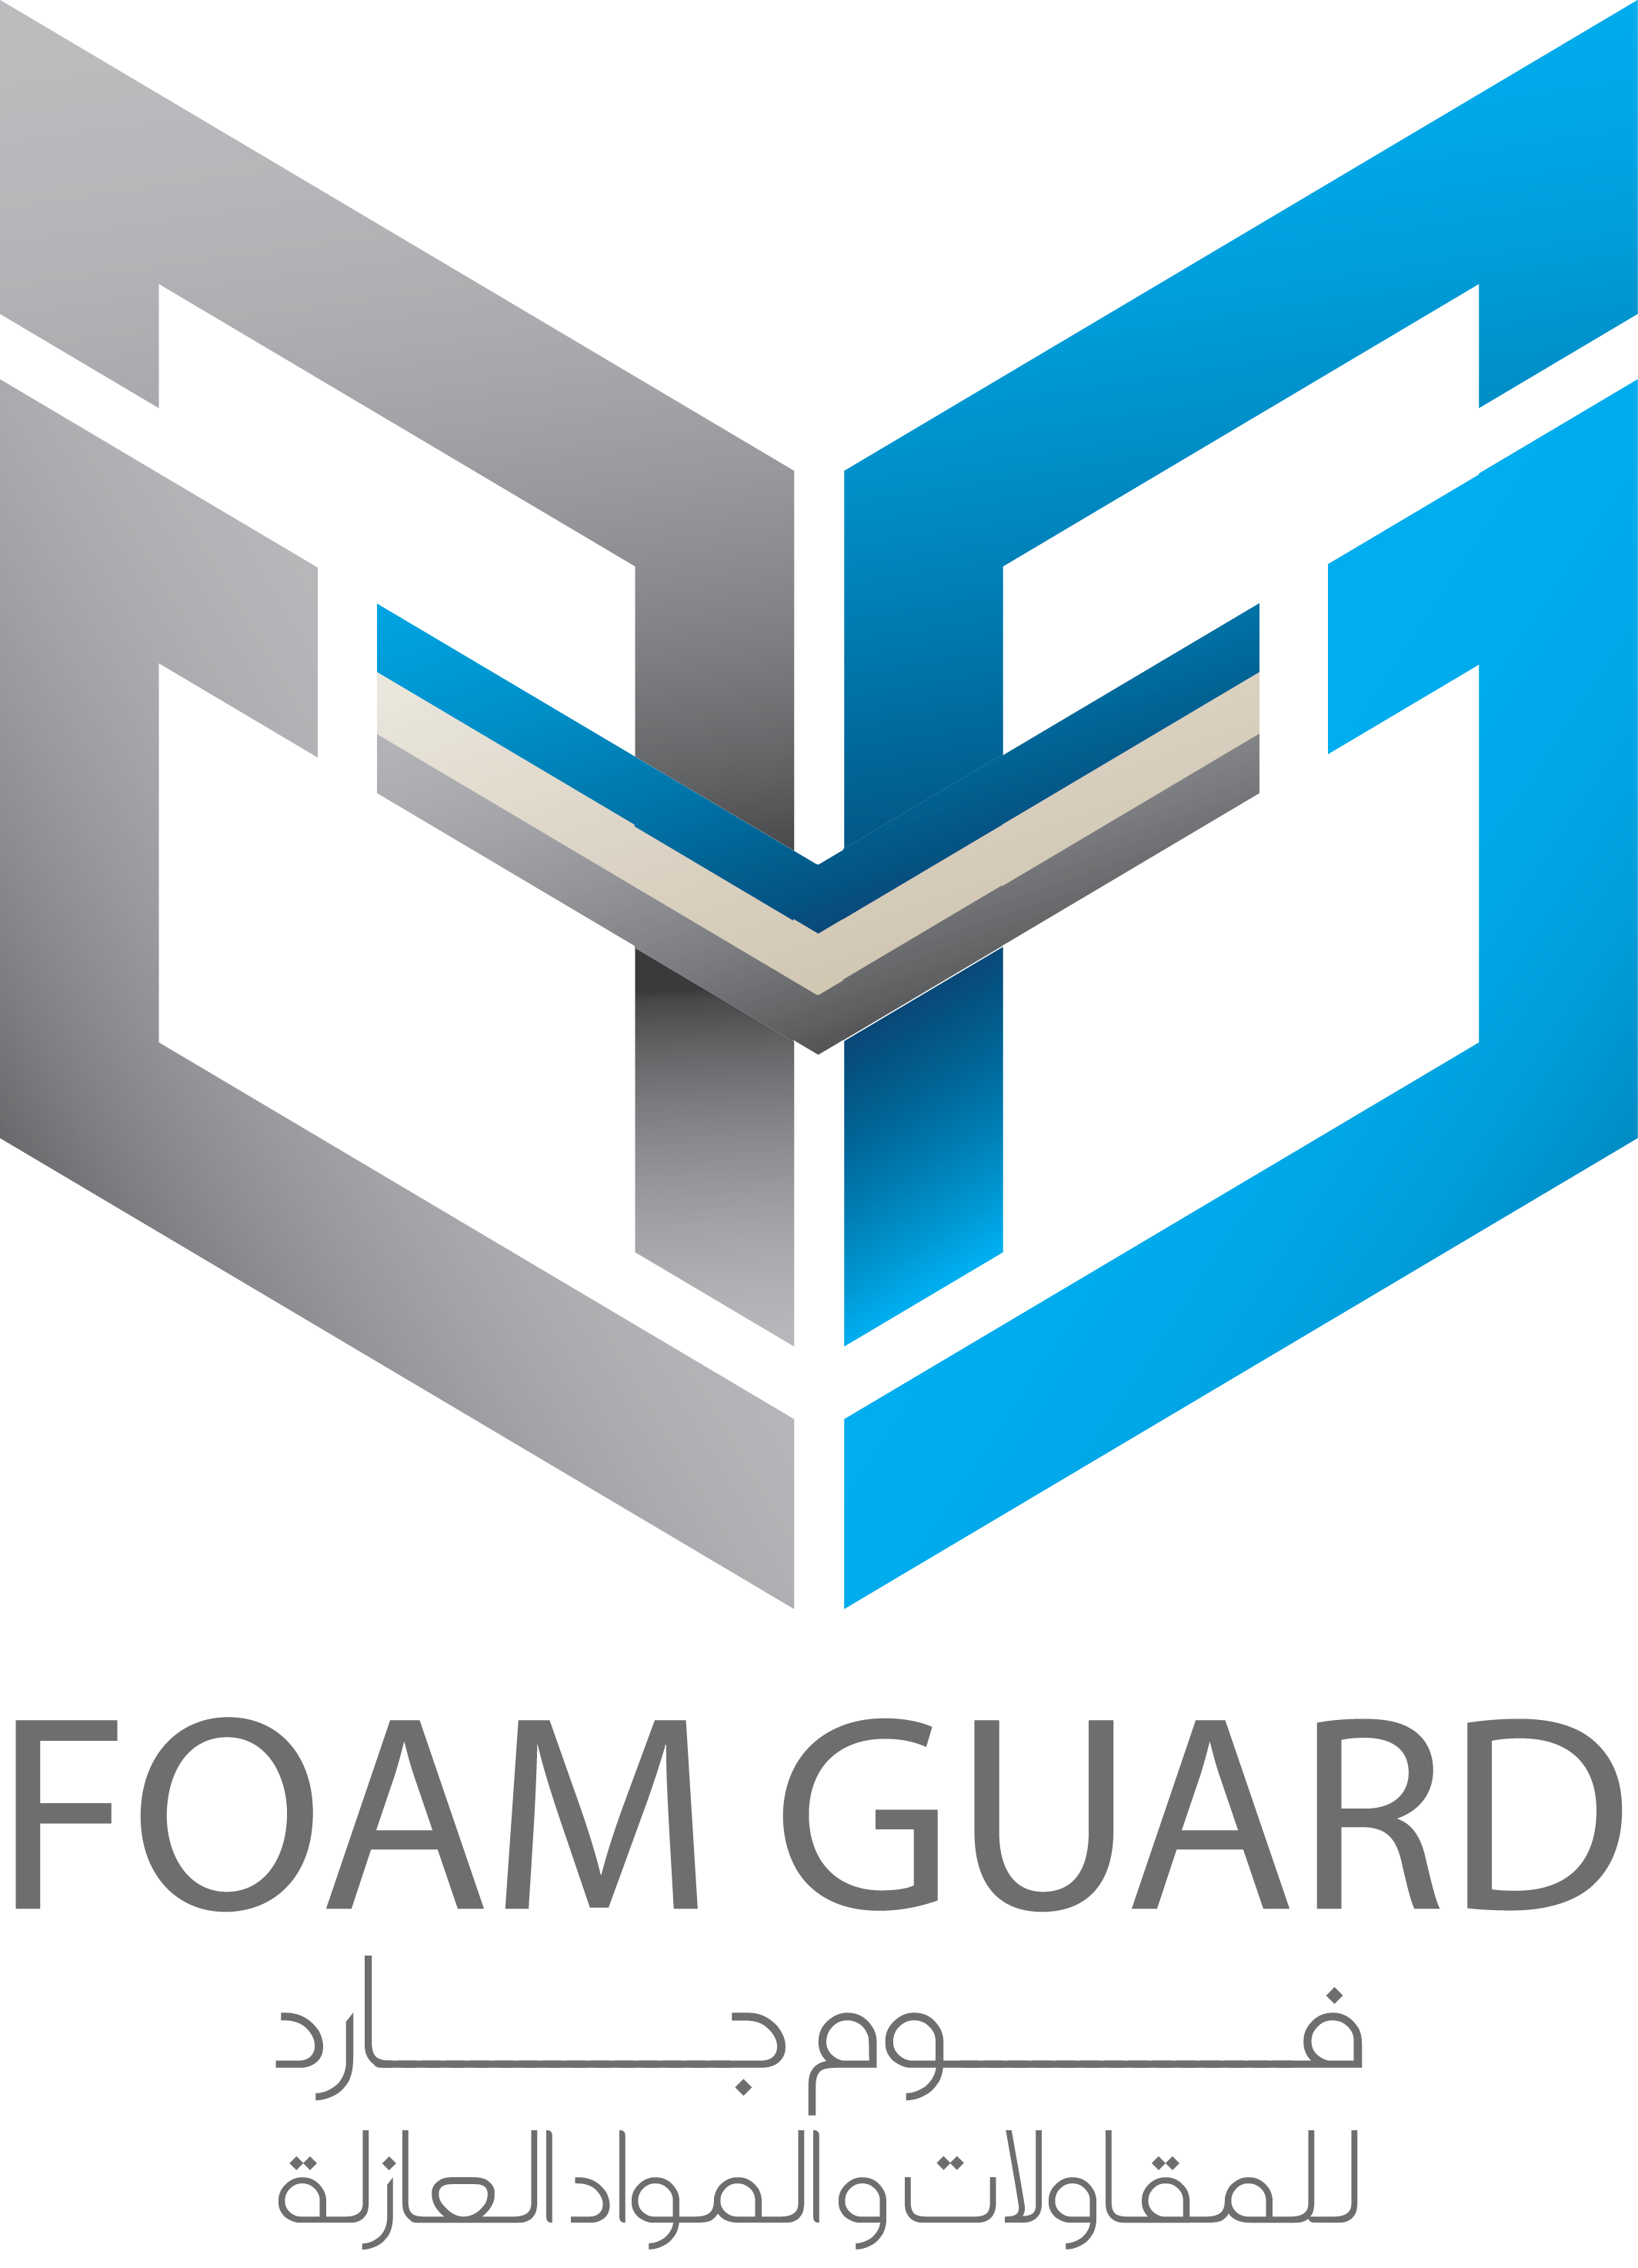 Foam Guard- عوازل فوم جارد